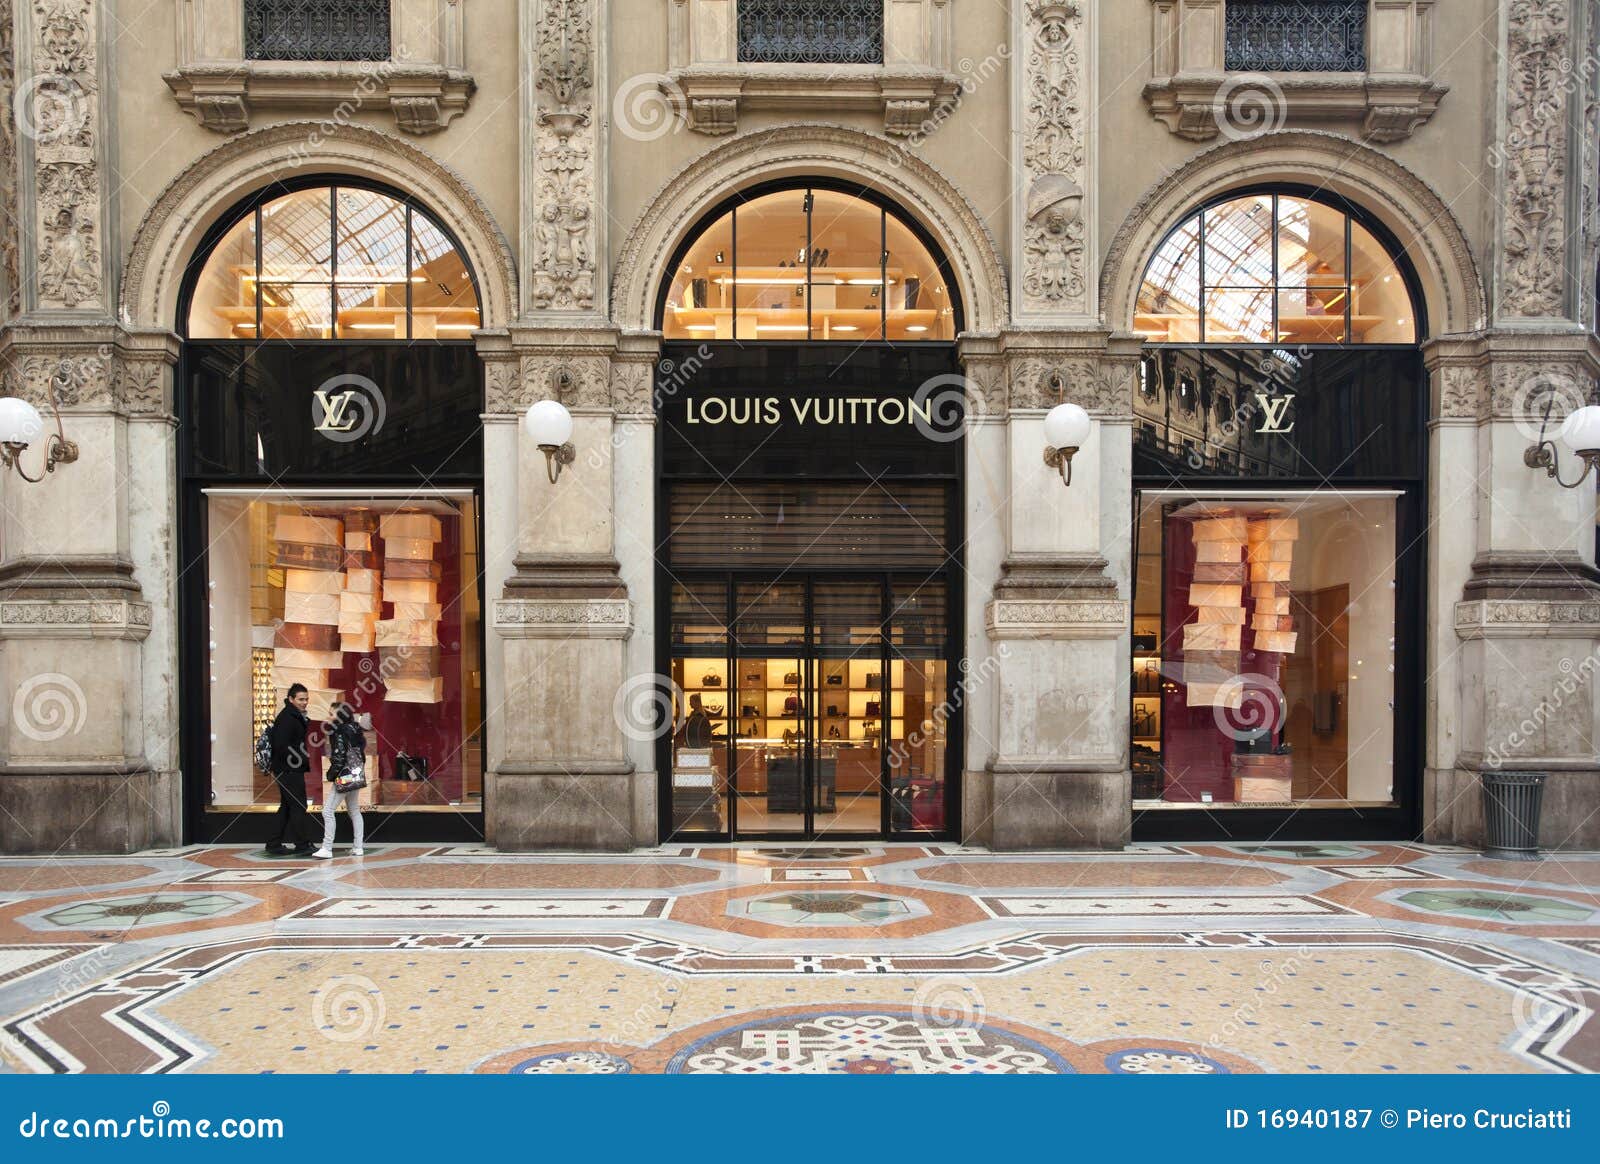 SHOPPING: Louis Vuitton Boutique, Milan Editorial Photography - Image: 16940187